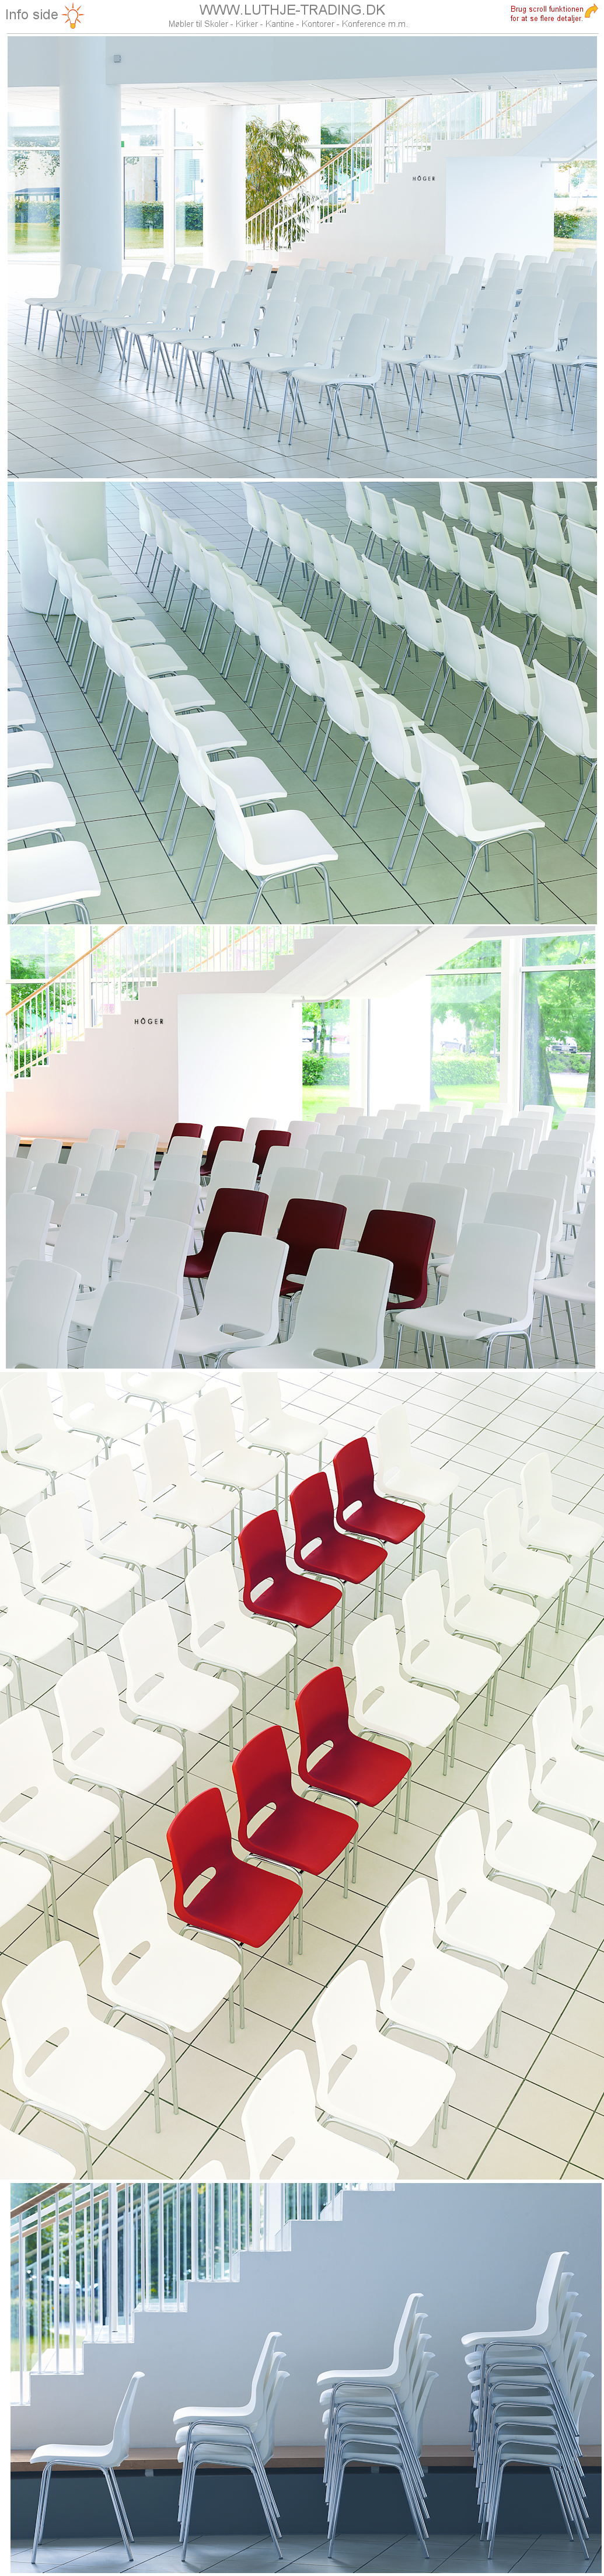 Ana stol præsentation i rækkeopstilling med hvide Ana stole. Vi giver gerne det bedste tilbud på en Ana stol.